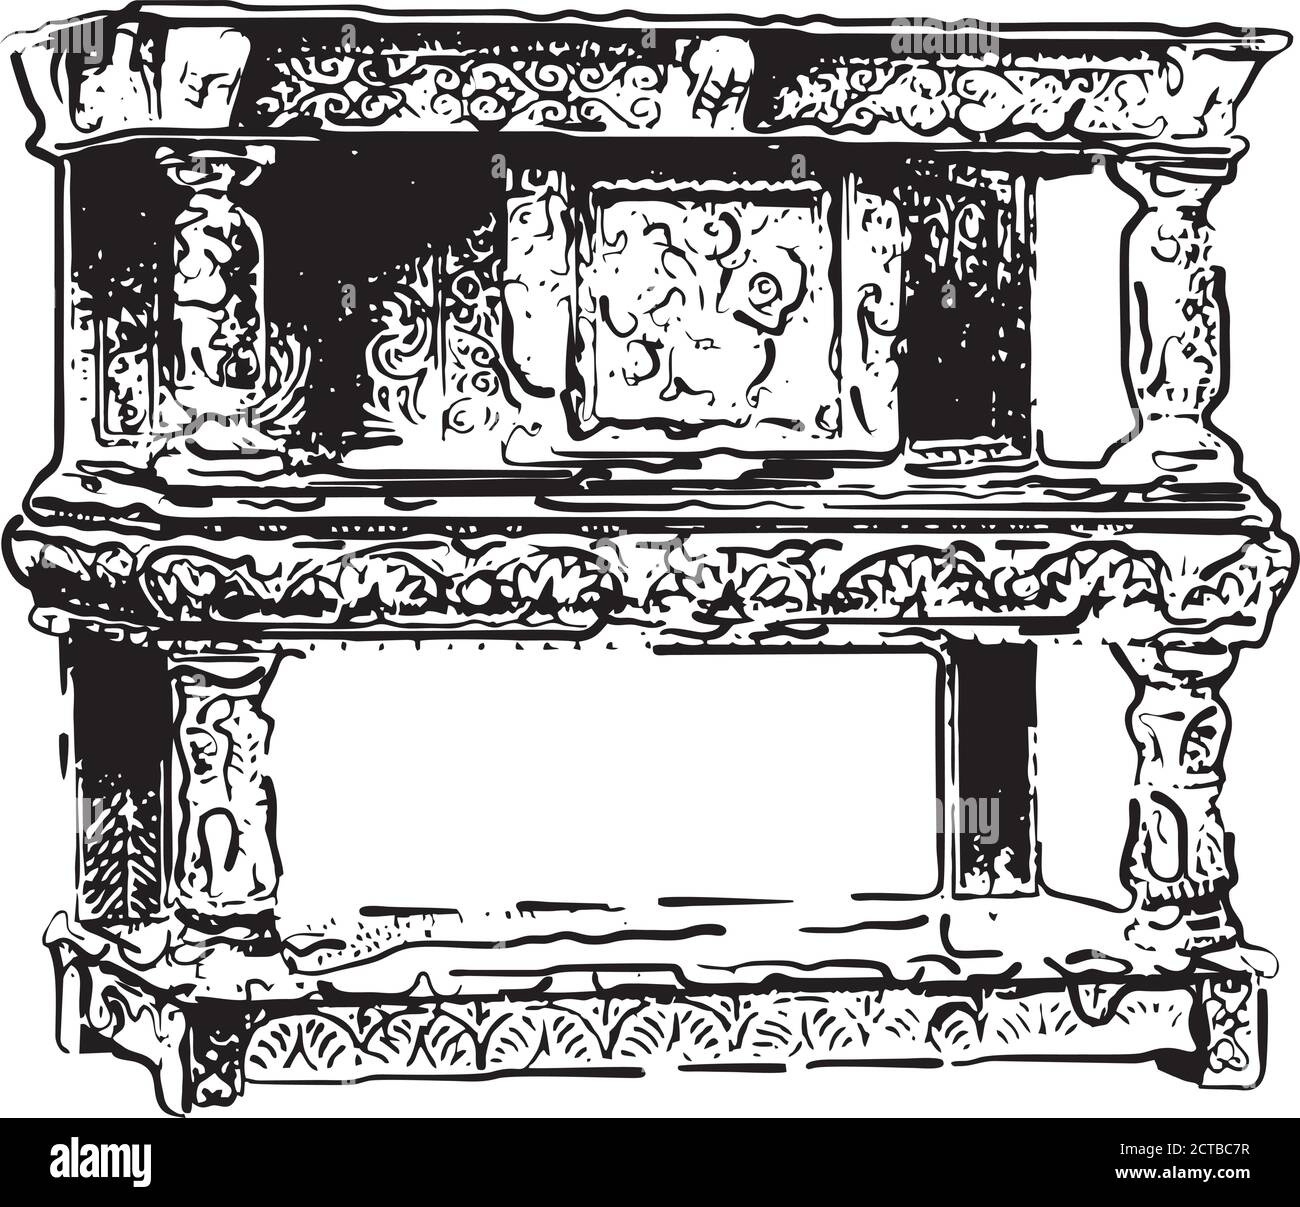 Vektor-Illustration der antiken Küchenschrank des Endes von 19. Jahrhundert Stock Vektor